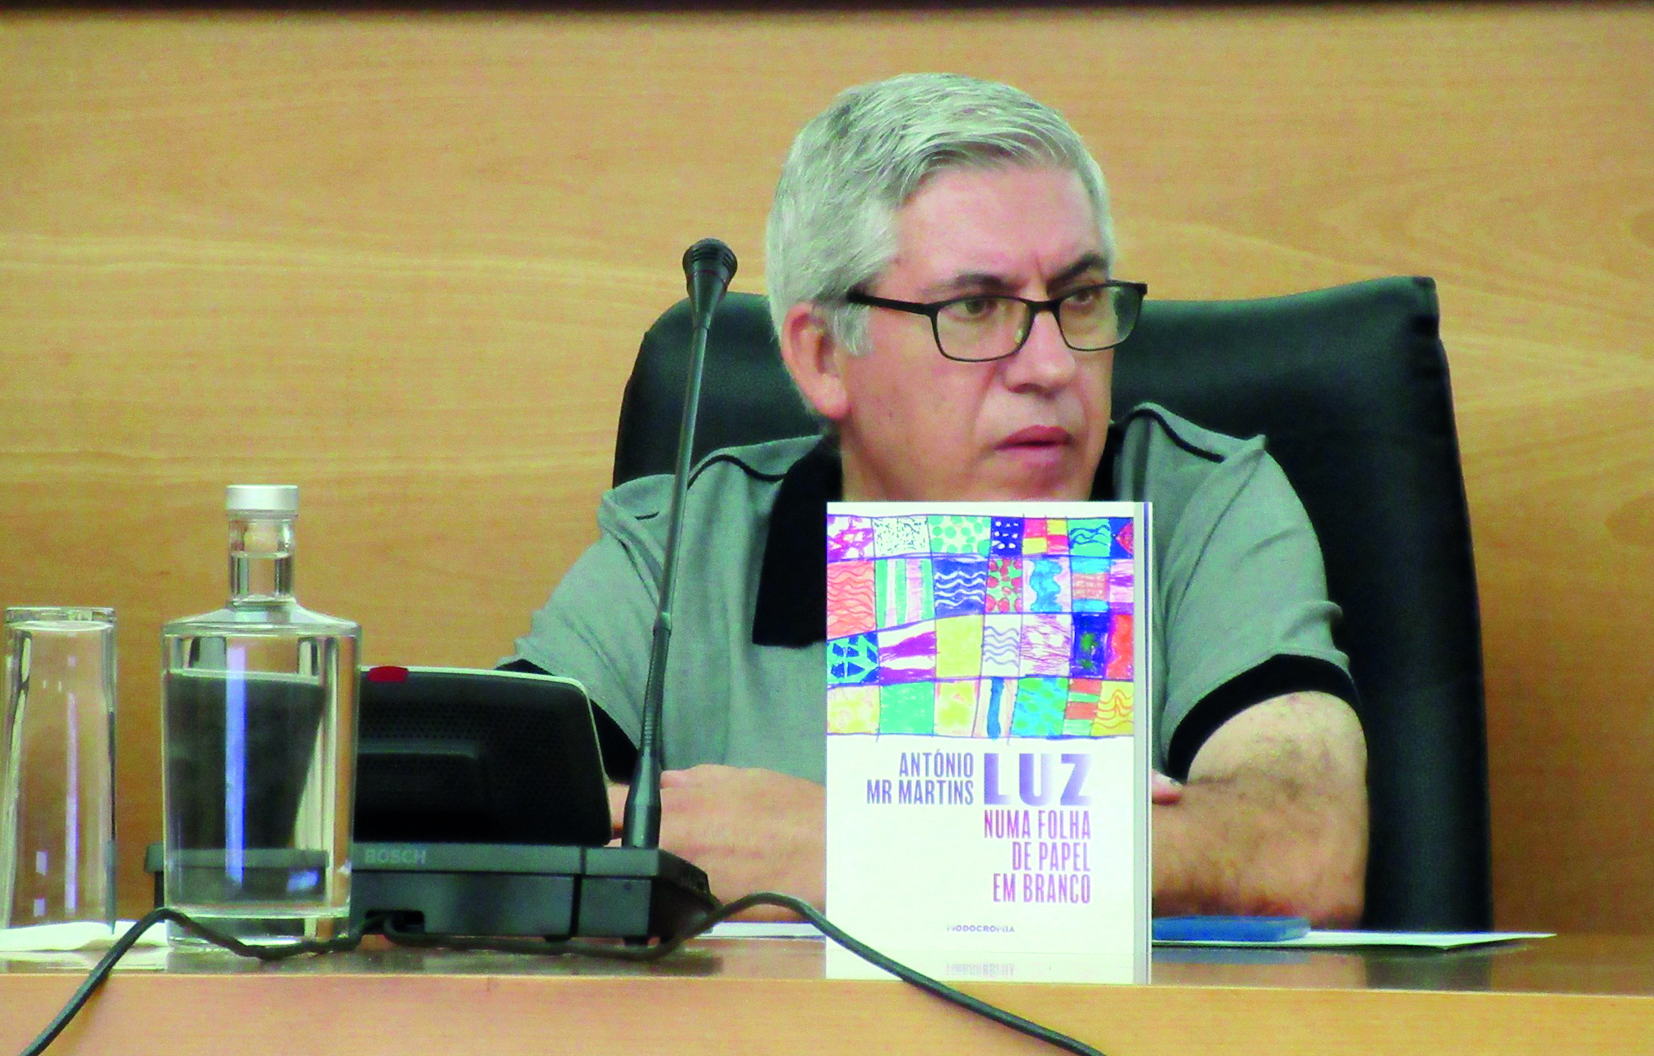 António MR Martins lançou novo livro de poesia